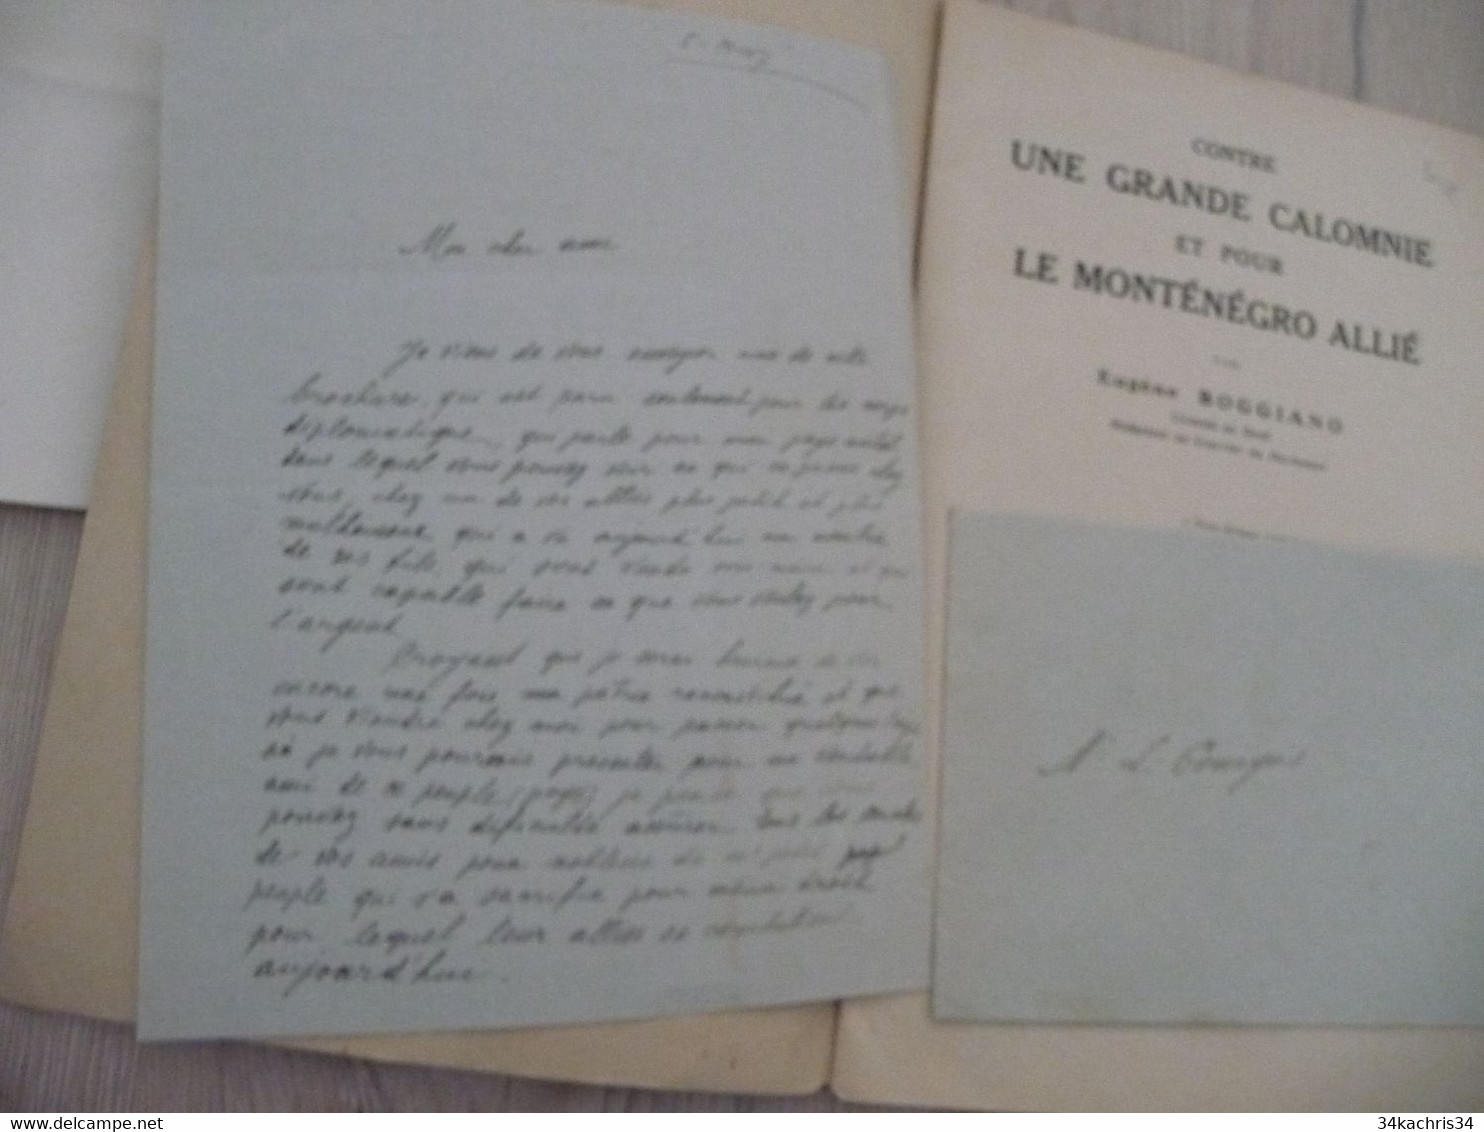 1917 Réservée Au Corps Diplomatique + Lettre Manuscrit Explicatif Boggiano Contre Une Grande Calomnie Pour Le Monténégro - Dokumente